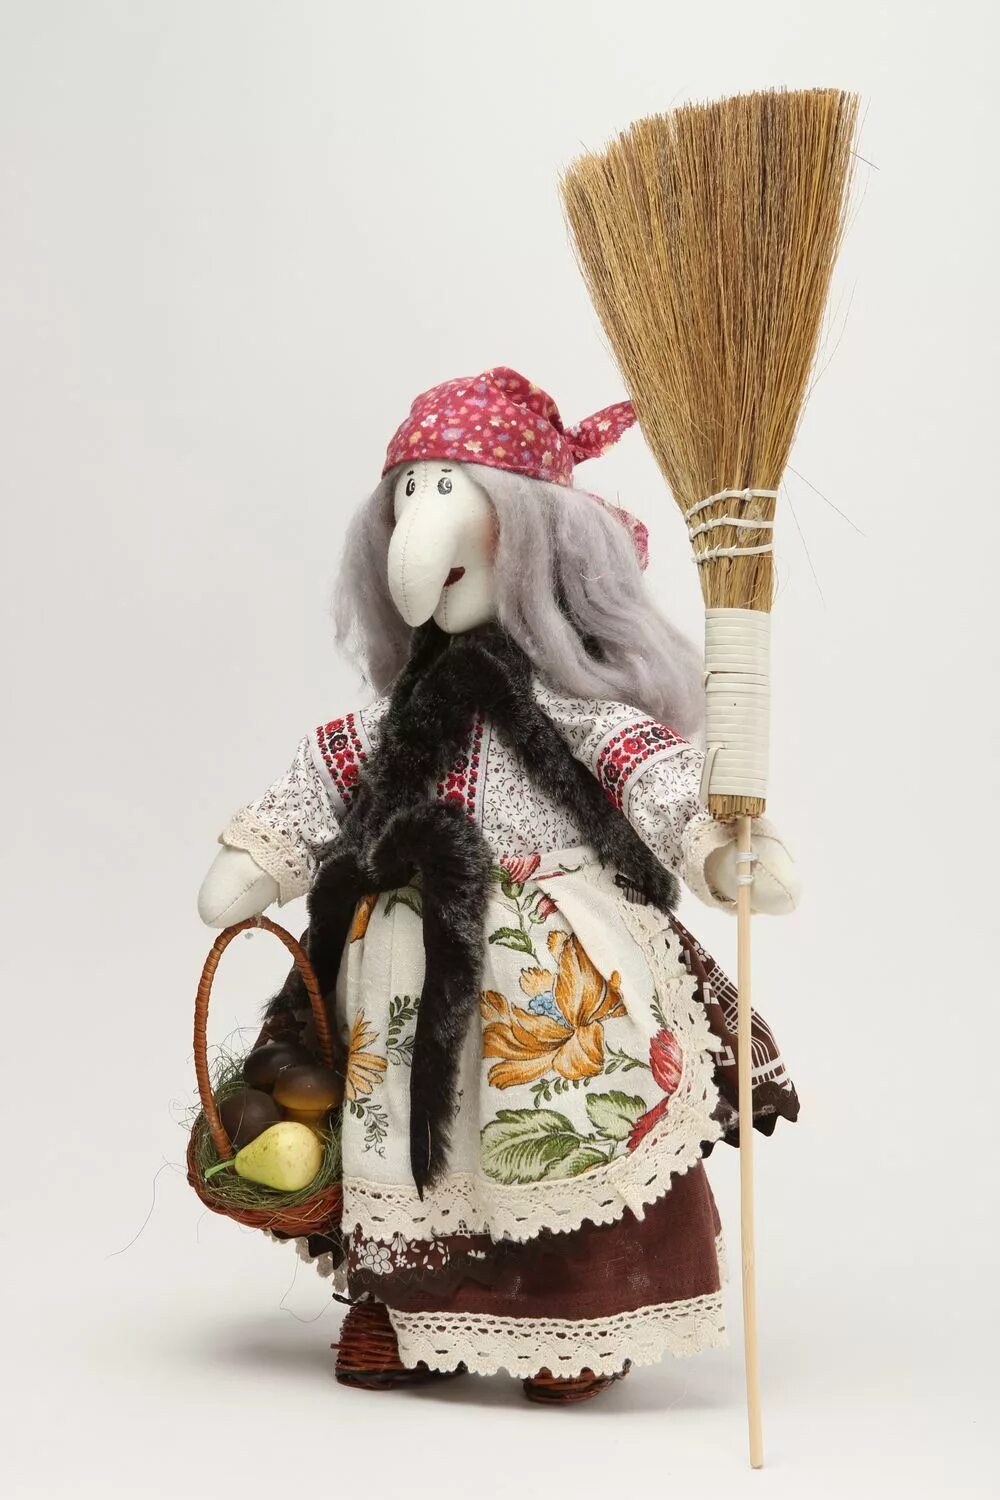 Баба Яга игрушка интерьерная. Необычная кукла баба Яга. Баба Яга кукла ручной работы. Текстильная кукла баба Яга ручной работы. Купить игрушку баба